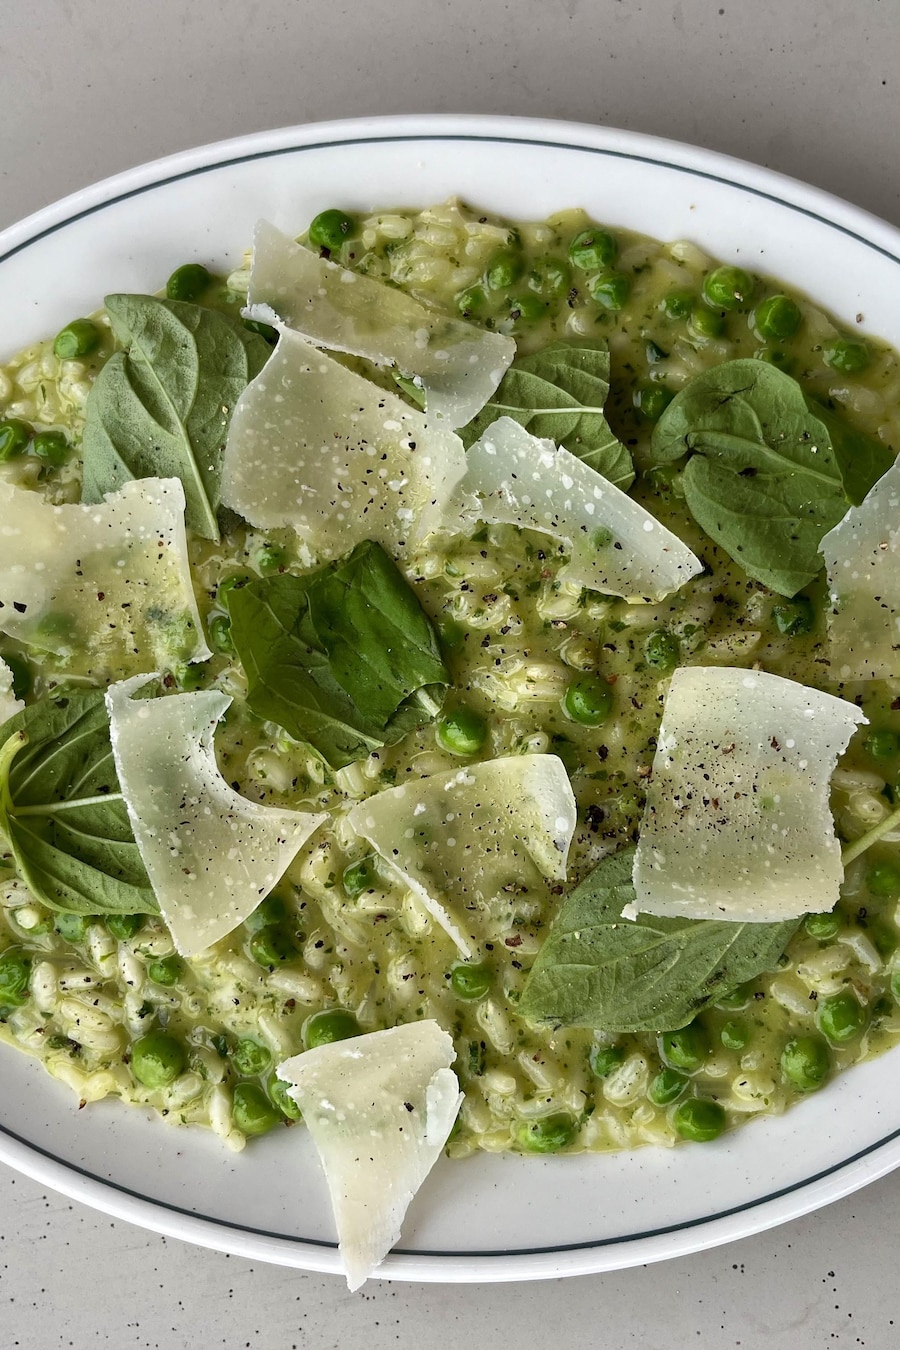 Un plat de risotto vert au basilic et à la roquette servi avec des petits pois et des copeaux de parmesan.